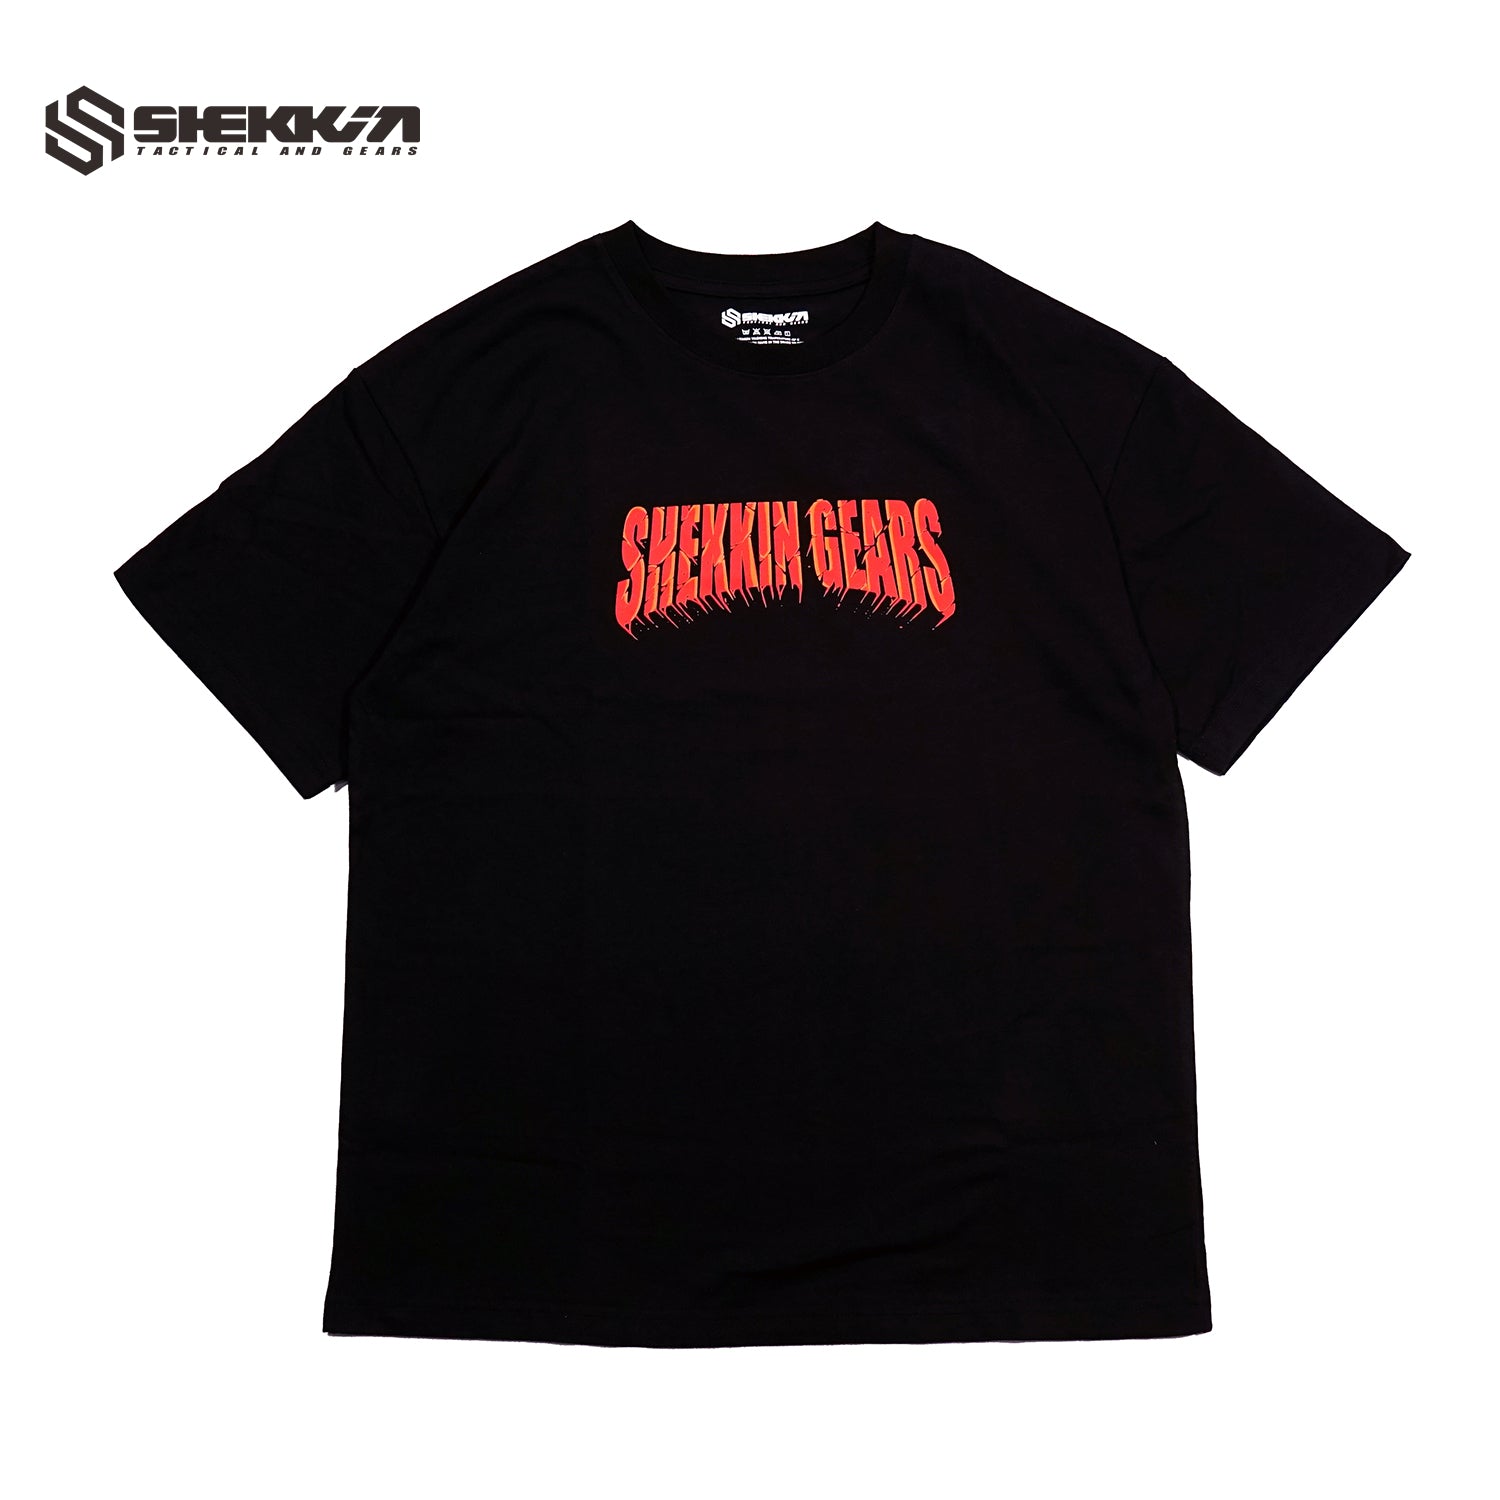 SHEKKIN GEARS HELL TAILOR T-Shirt